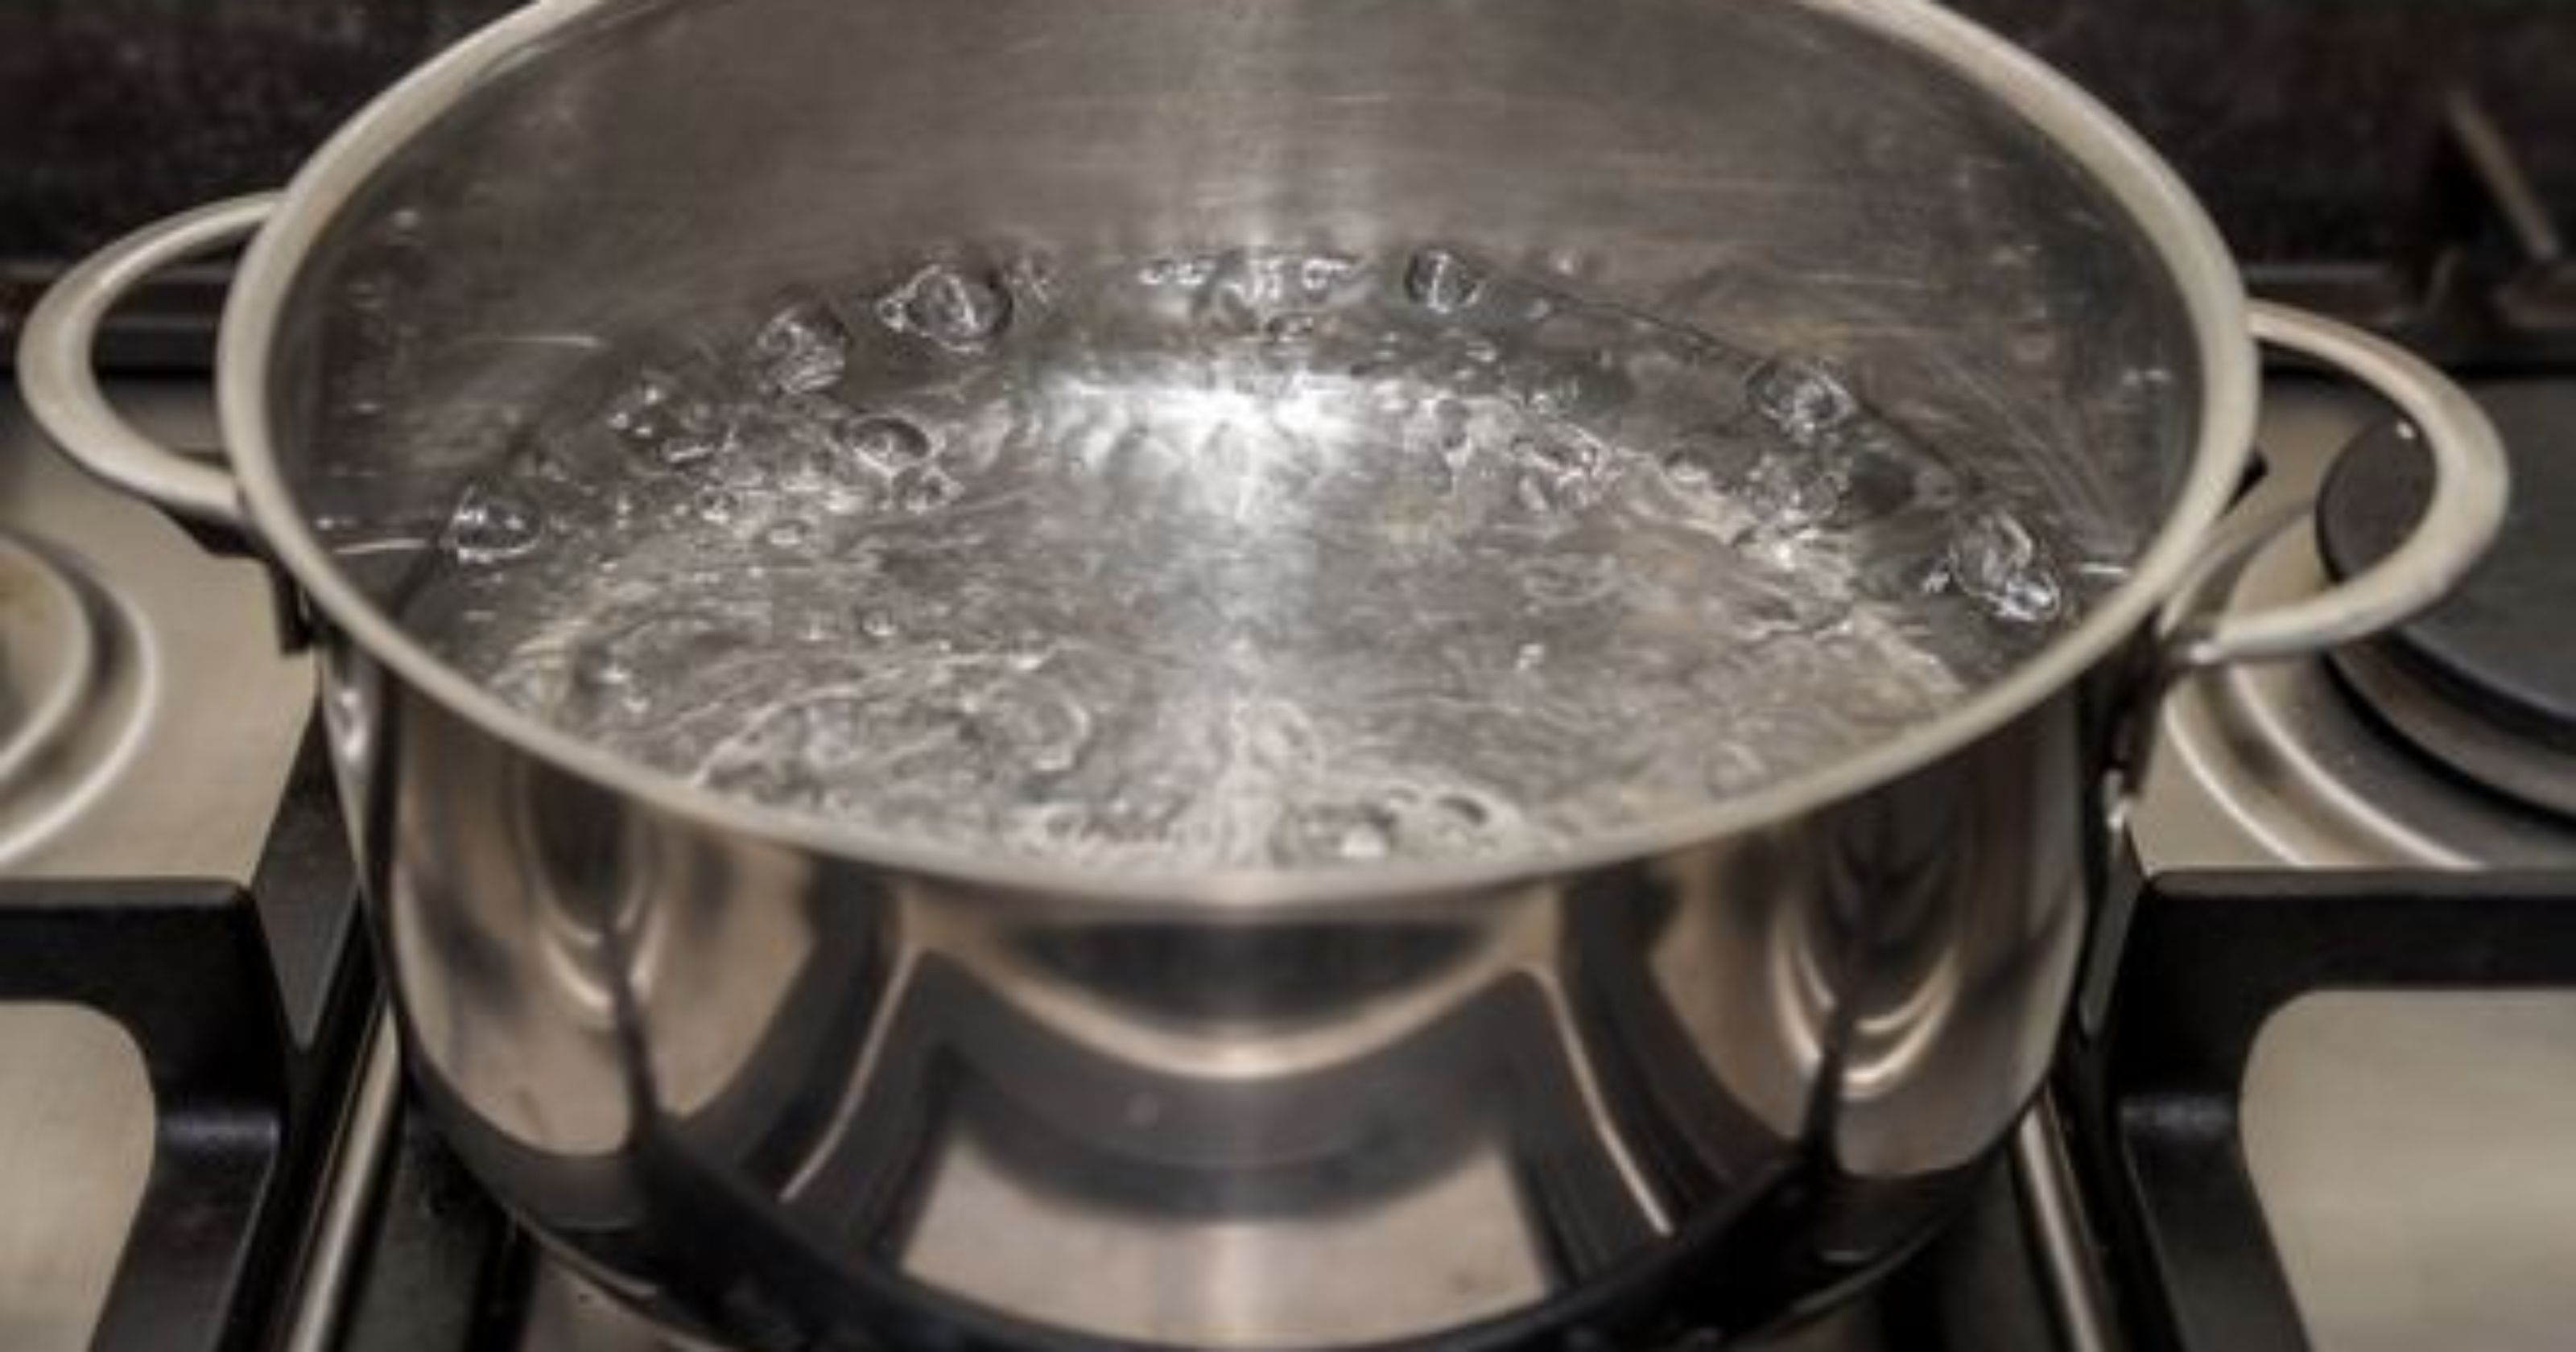 Water main break causes boil water alert for Livonia